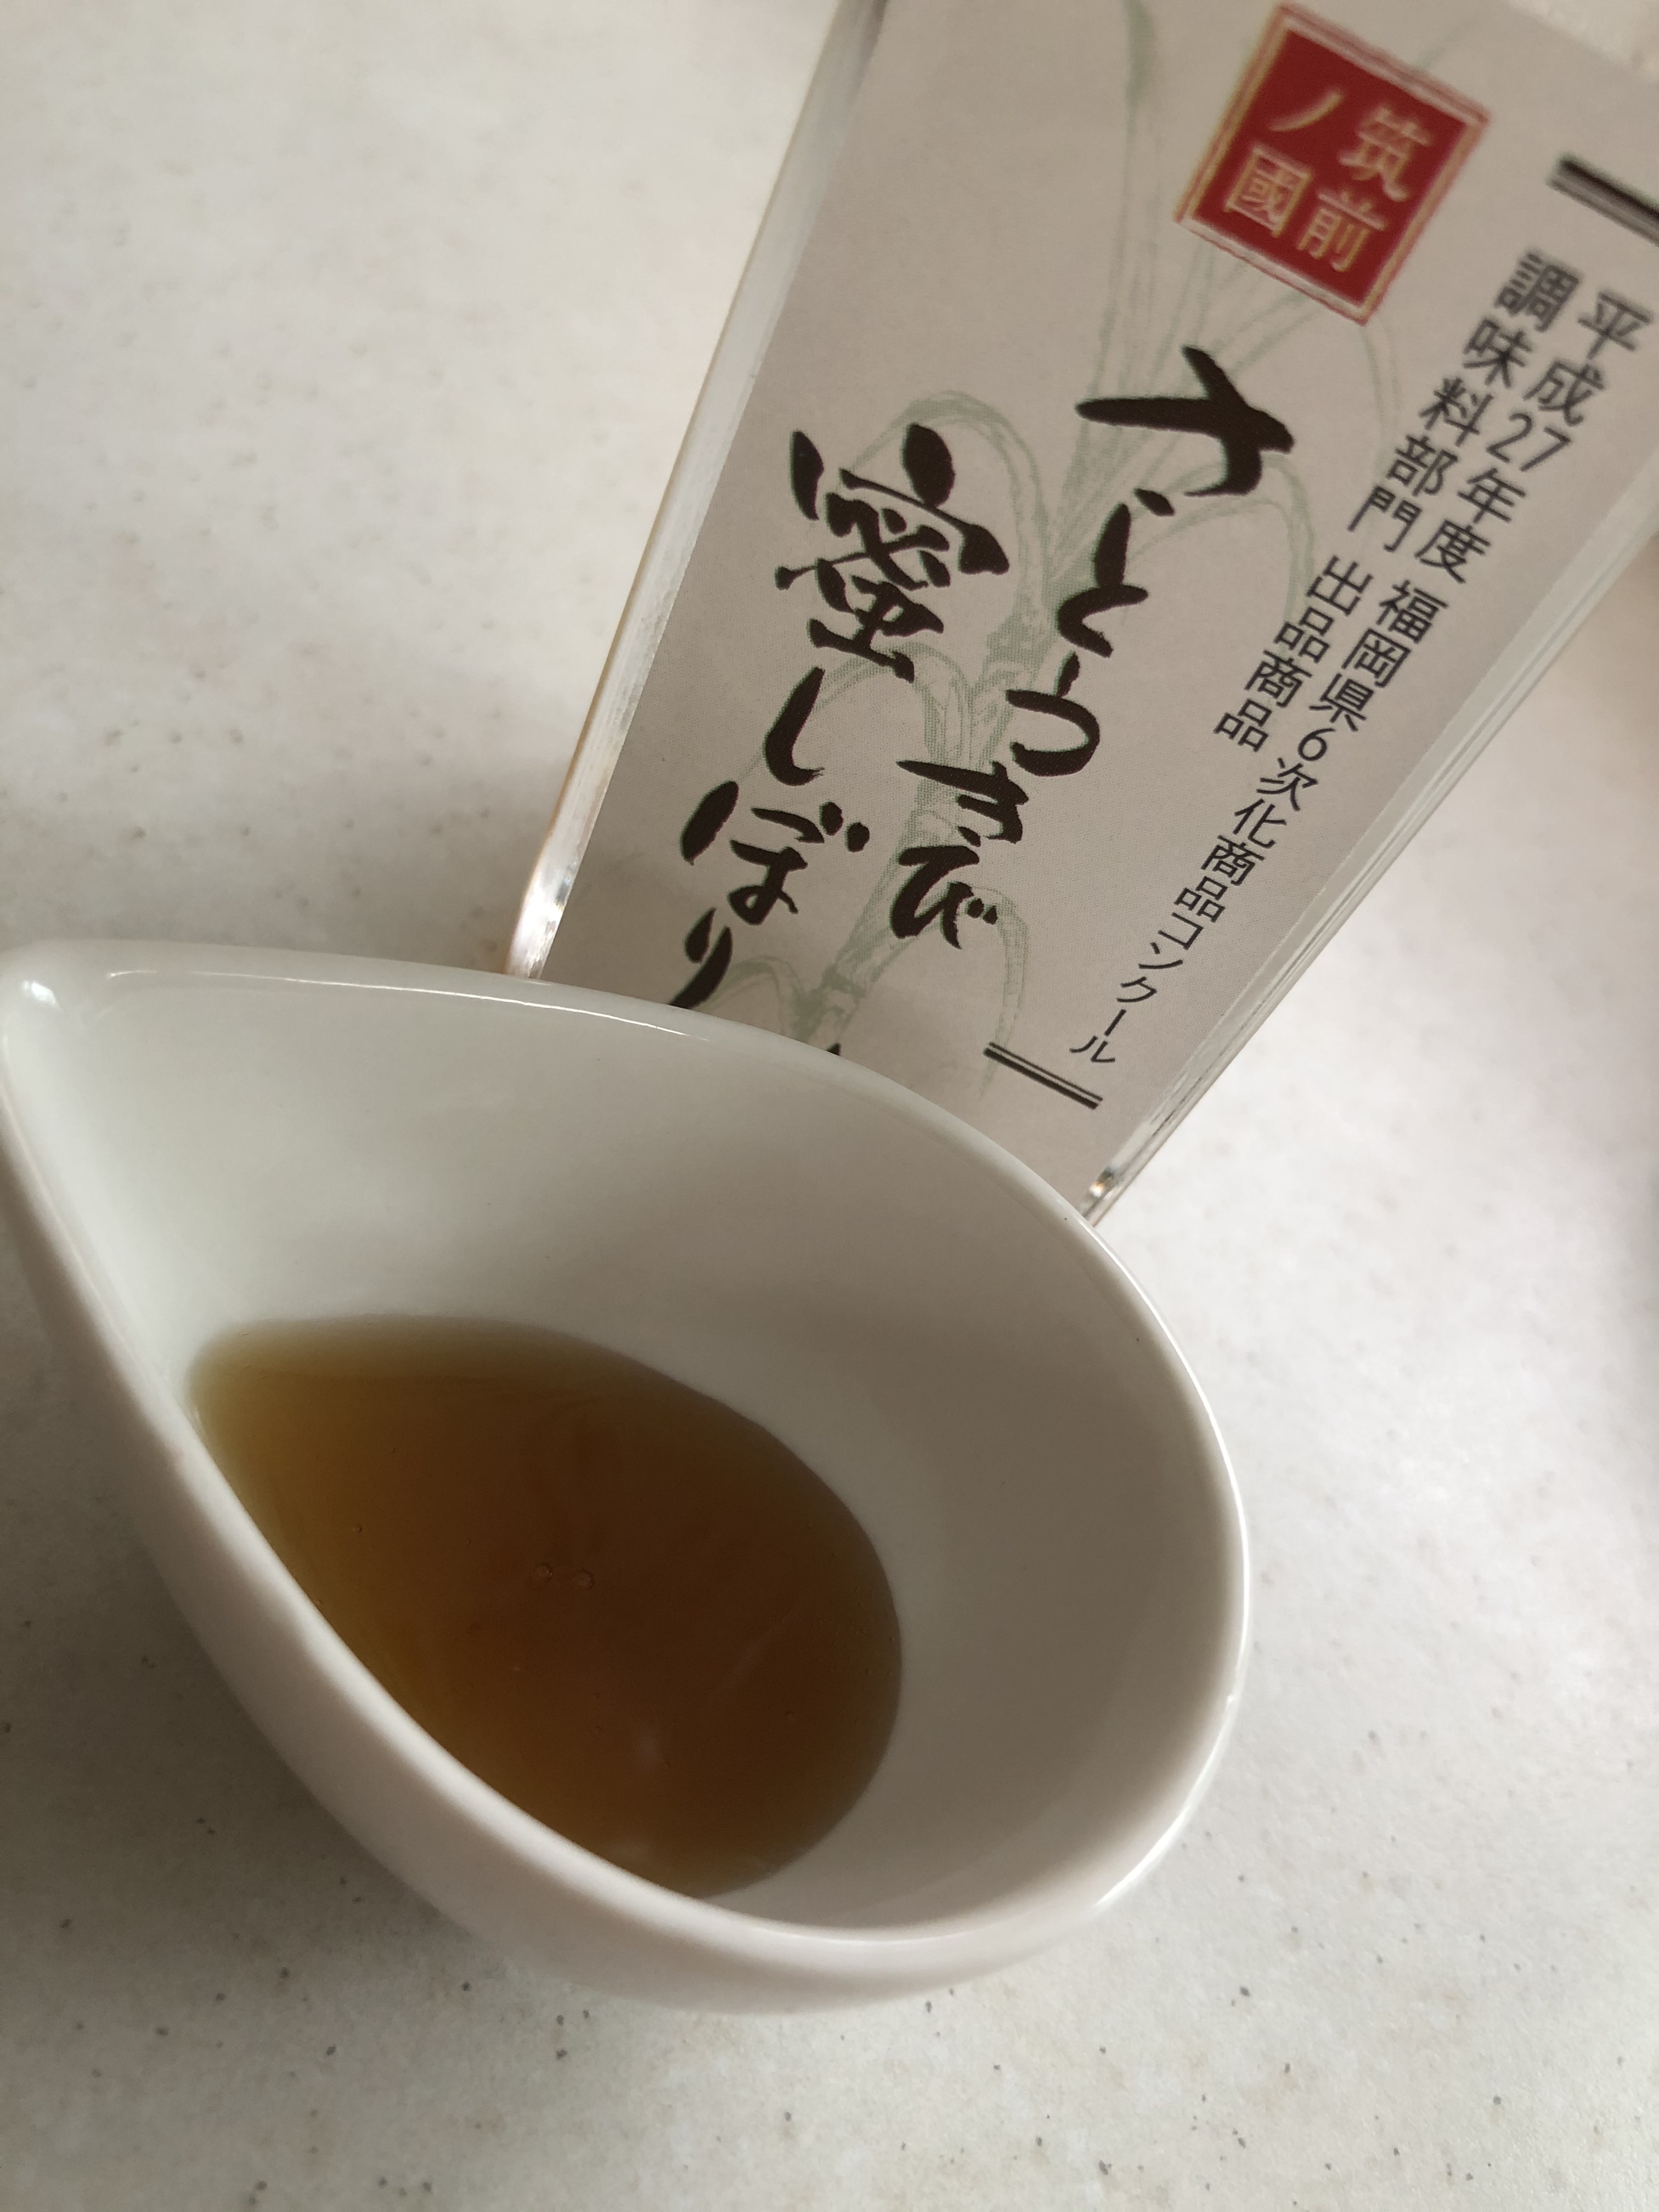 まっすぐで正直な福岡県産の黒糖・蜜しぼりはいかがですか？